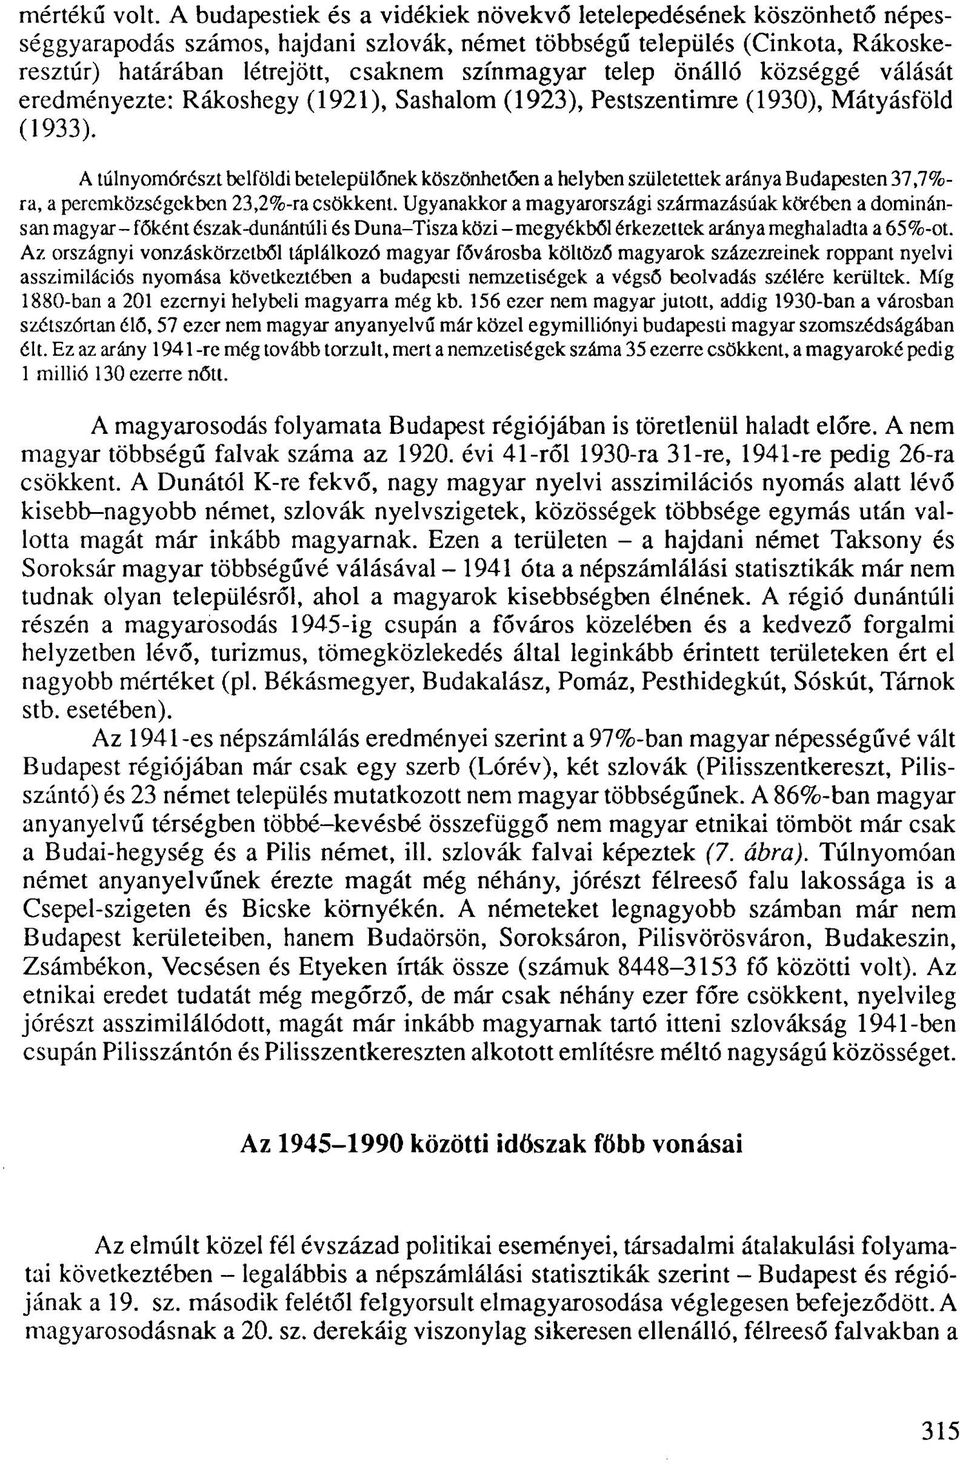 telep önálló községgé válását eredményezte: Rákoshegy (1921), Sashalom (1923), Pestszentimre (1930), Mátyásföld (1933).